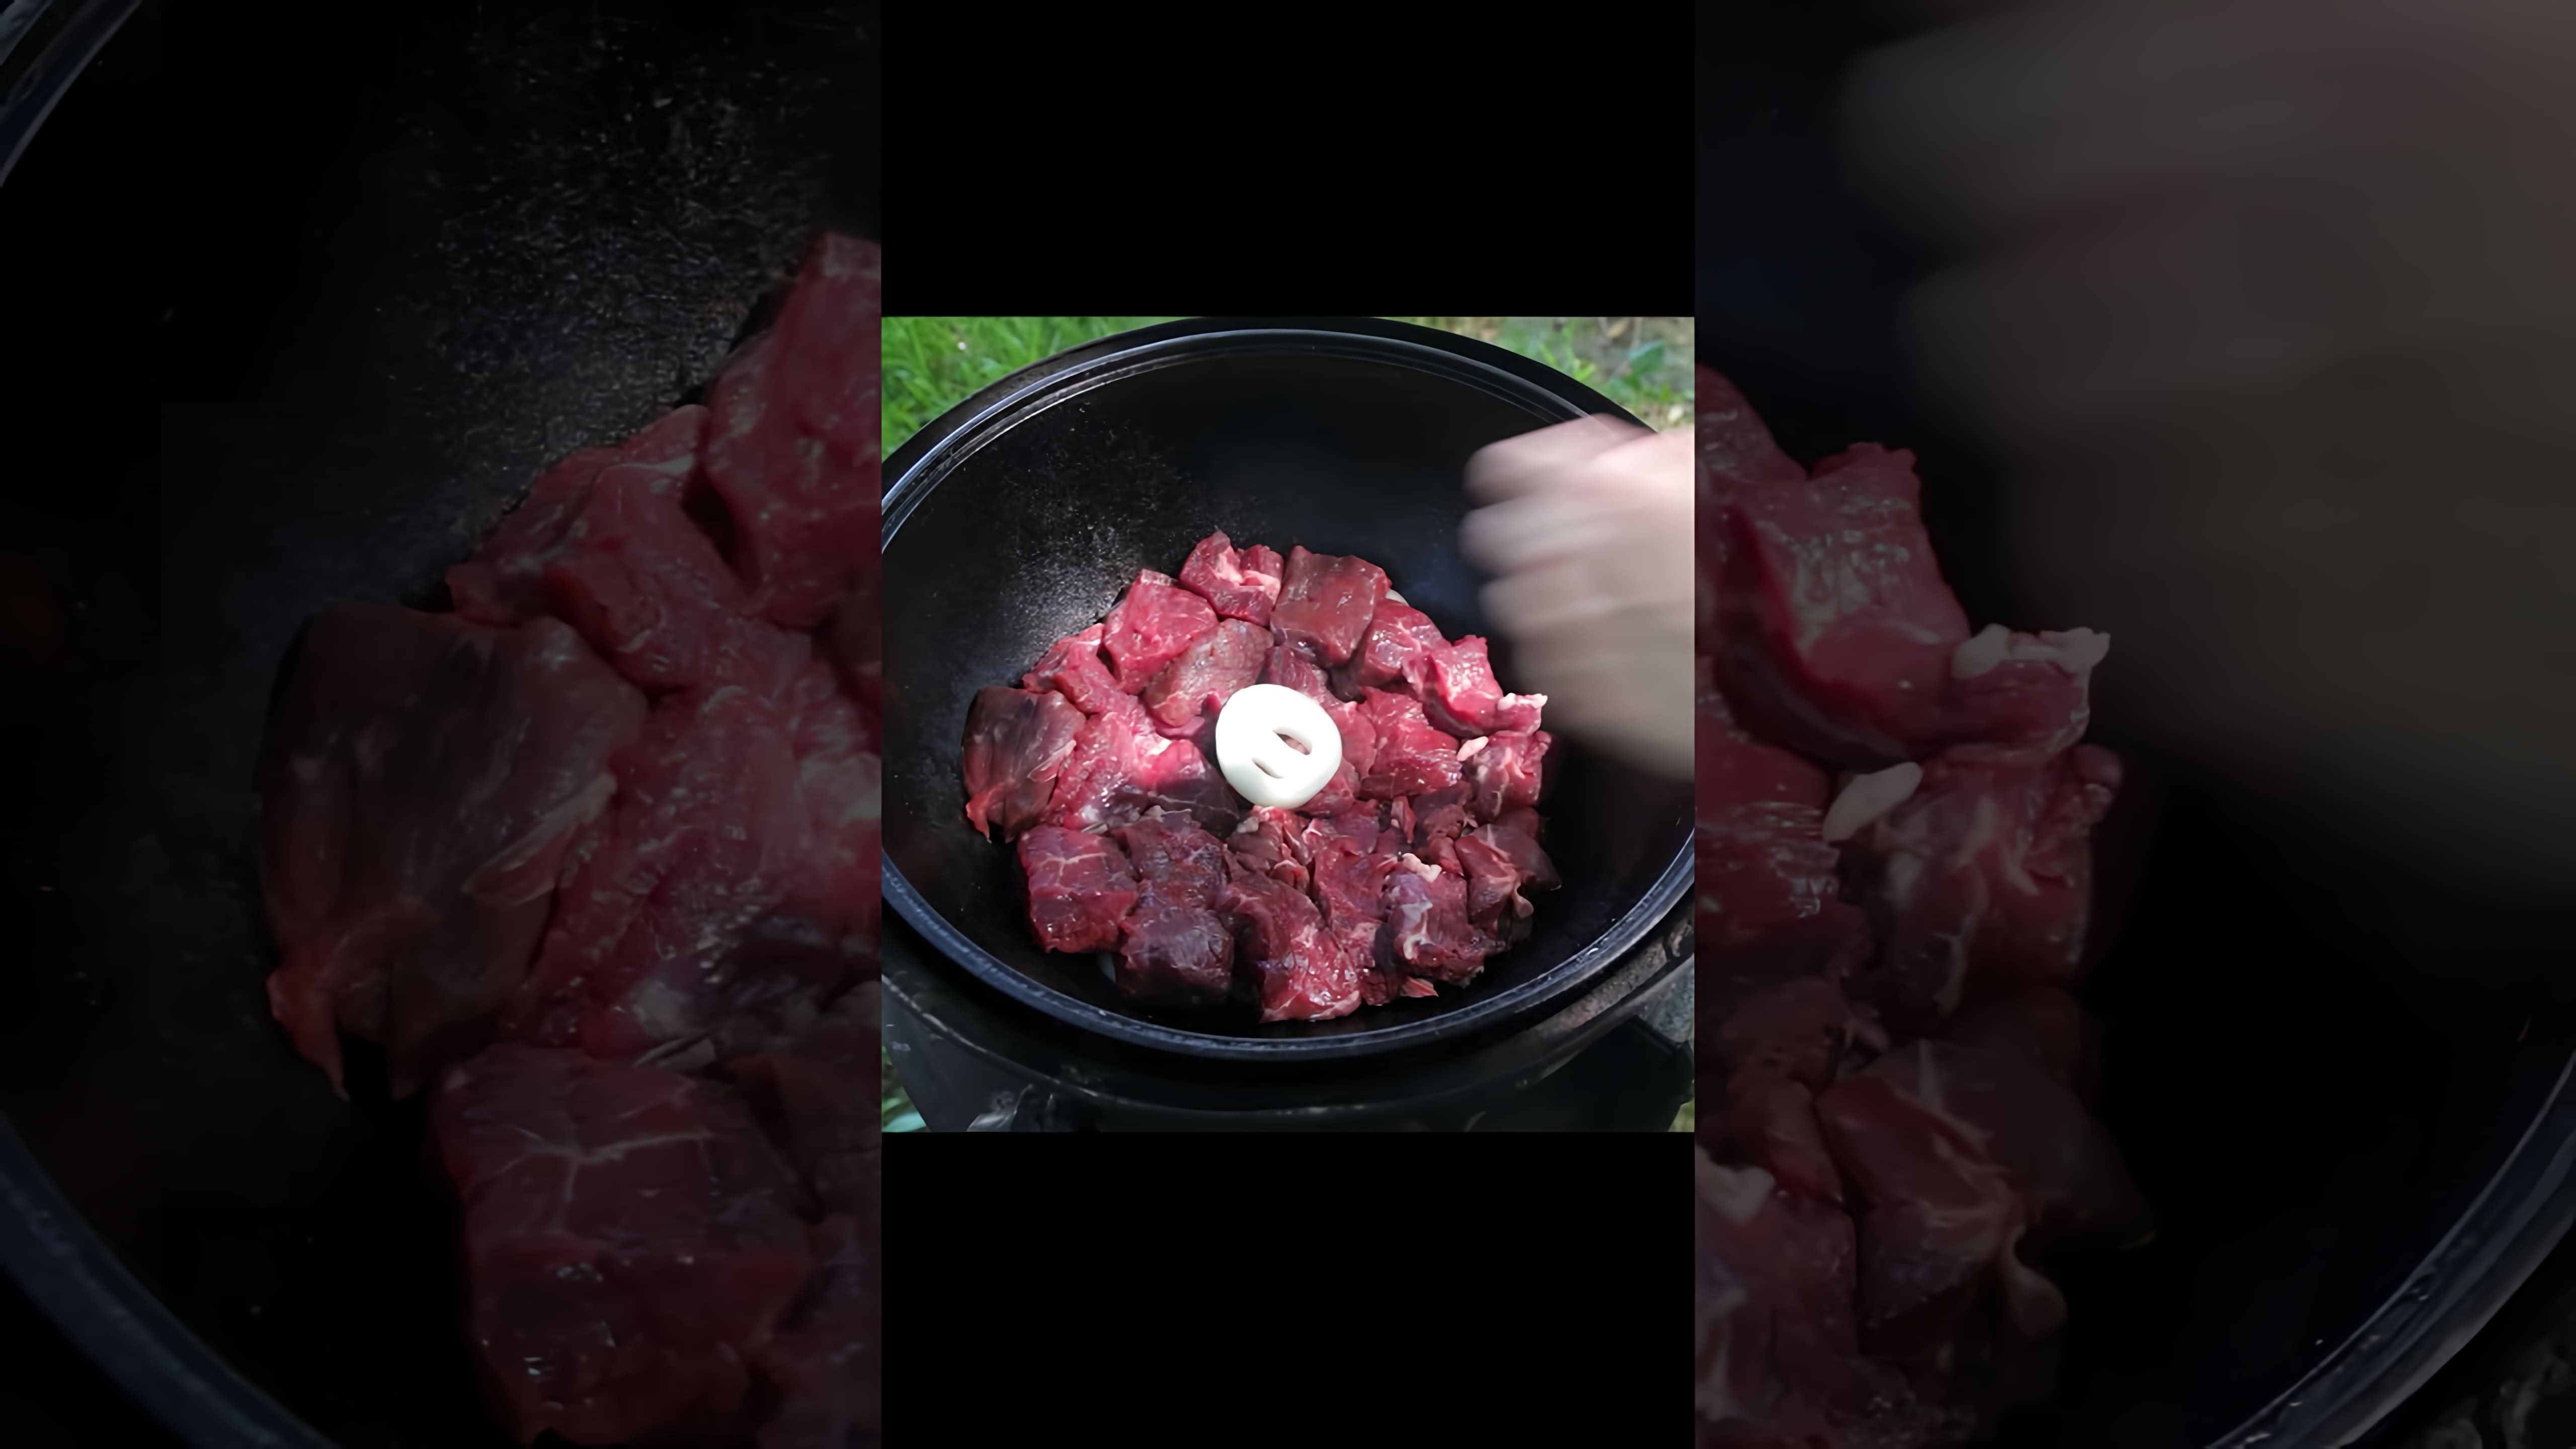 Видео утверждает, что этот рецепт использовался для приготовления мяса для высших чиновников в России, отсюда и название "мясо по-кремлевски"